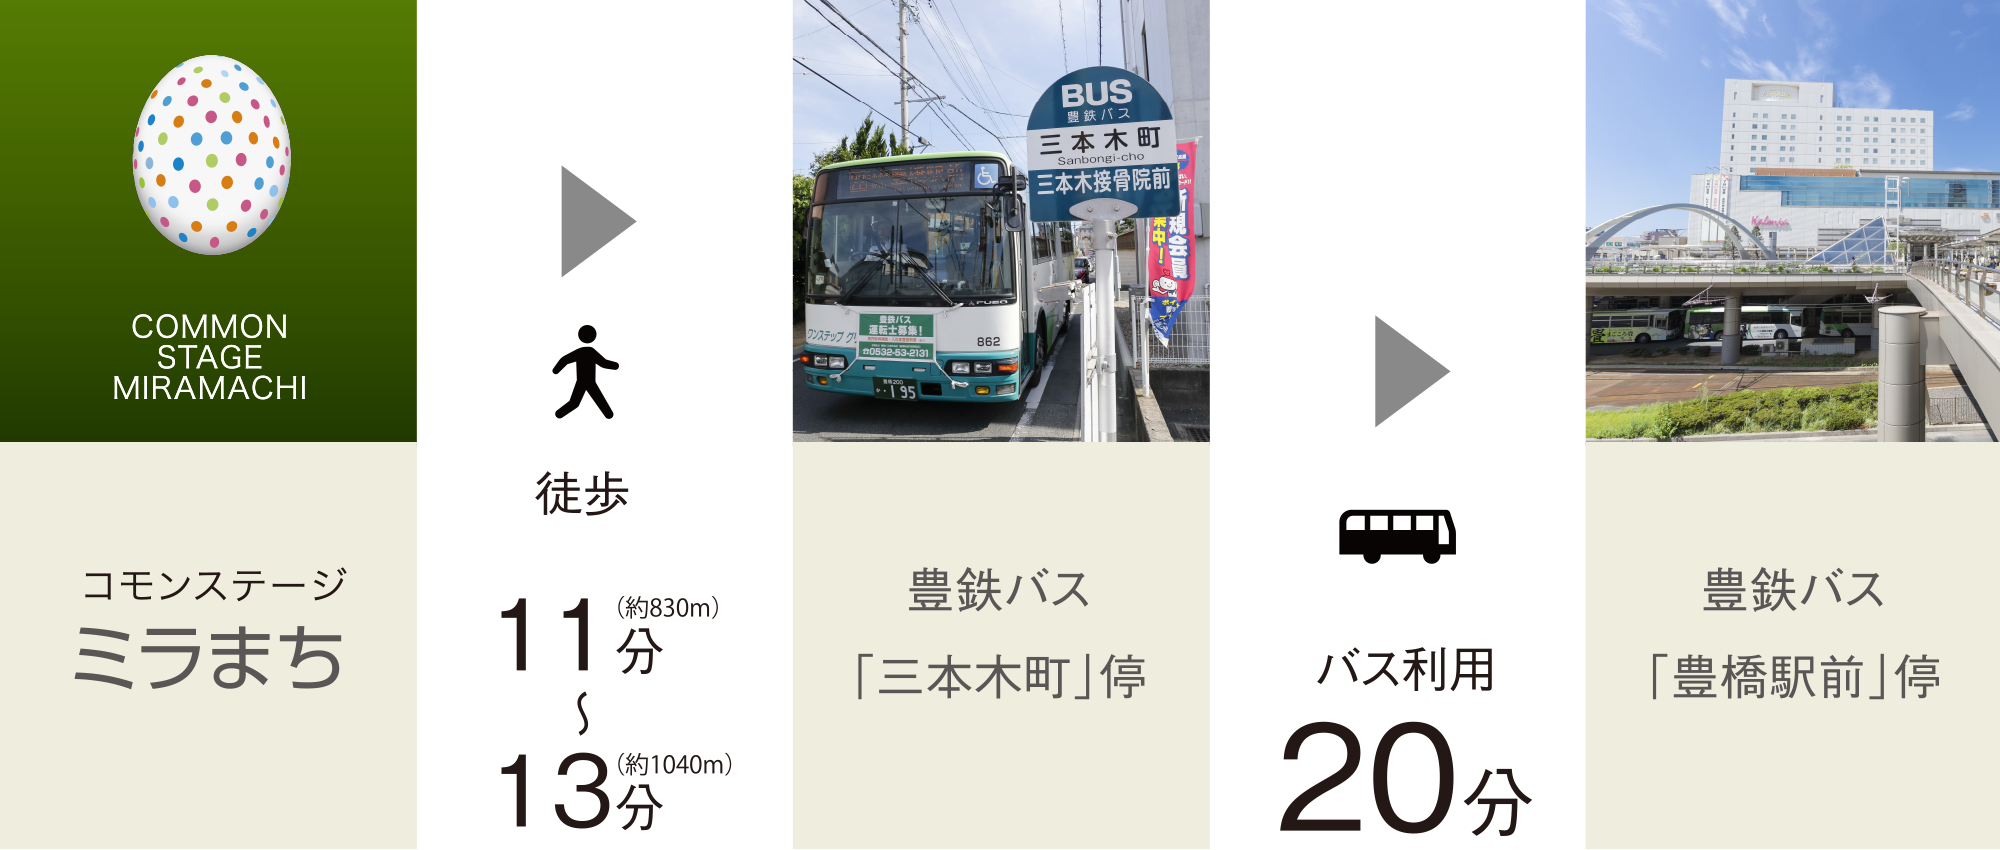 コモンステージミラまち→徒歩→豊鉄バス「三本木町」停→バス→JR・名鉄名古屋本線「豊橋」駅